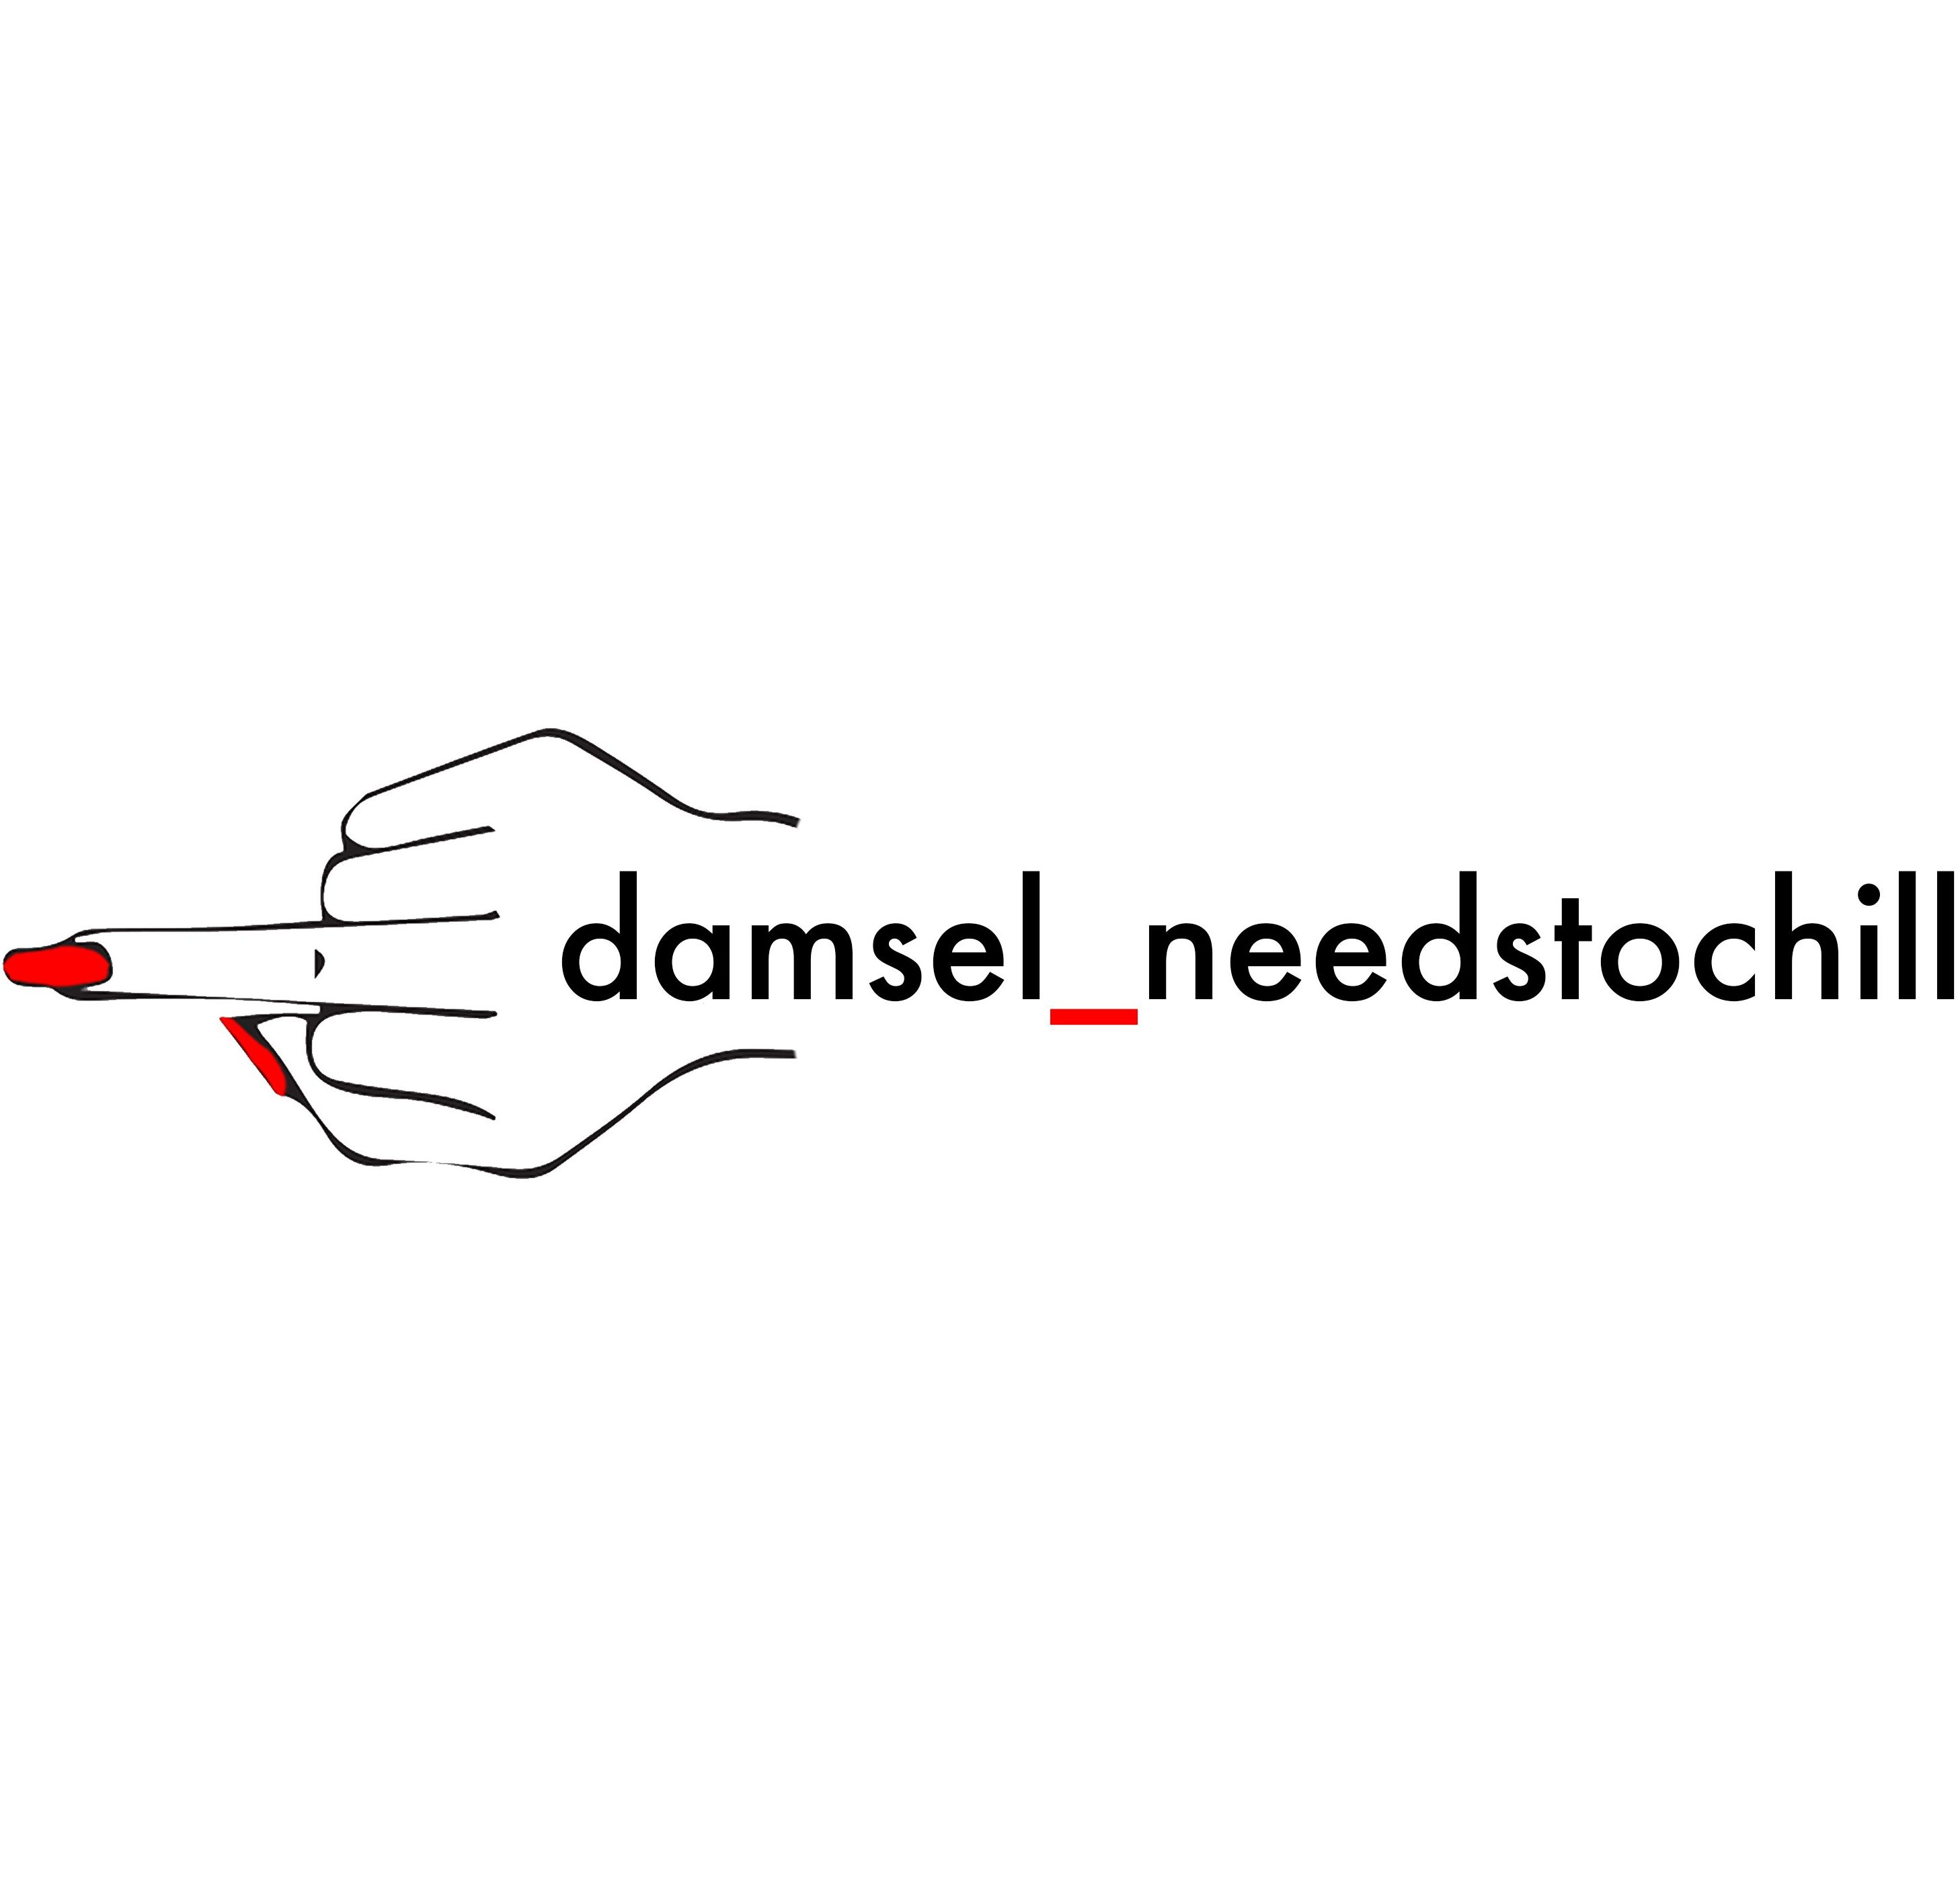 damsel_needstochill